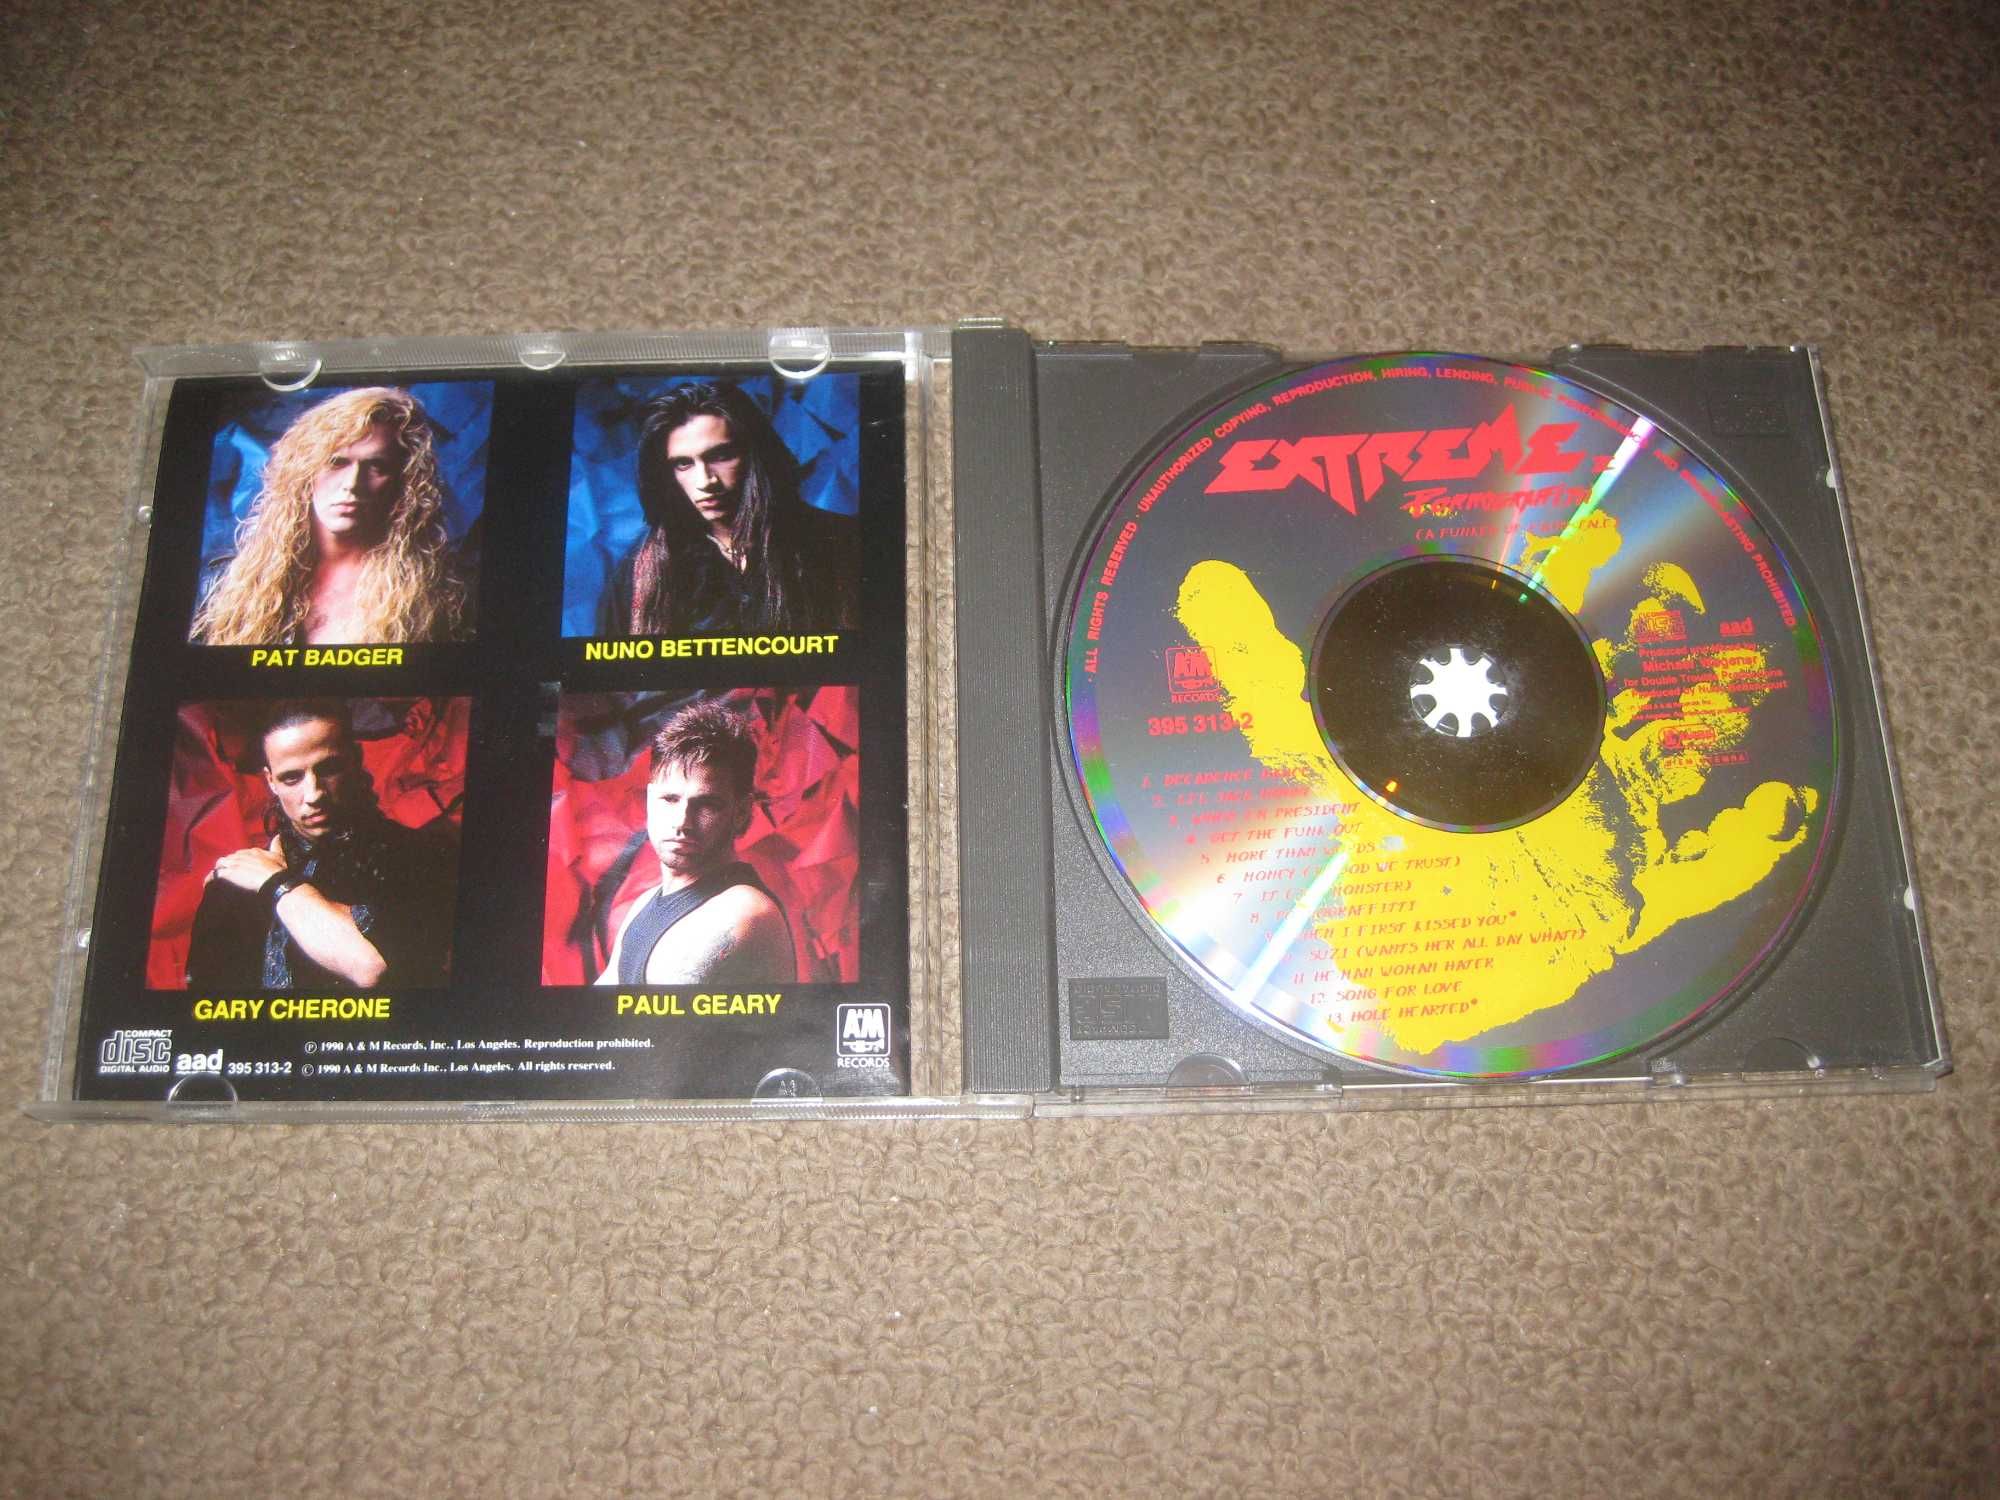 CD dos Extreme "Pornograffiti"